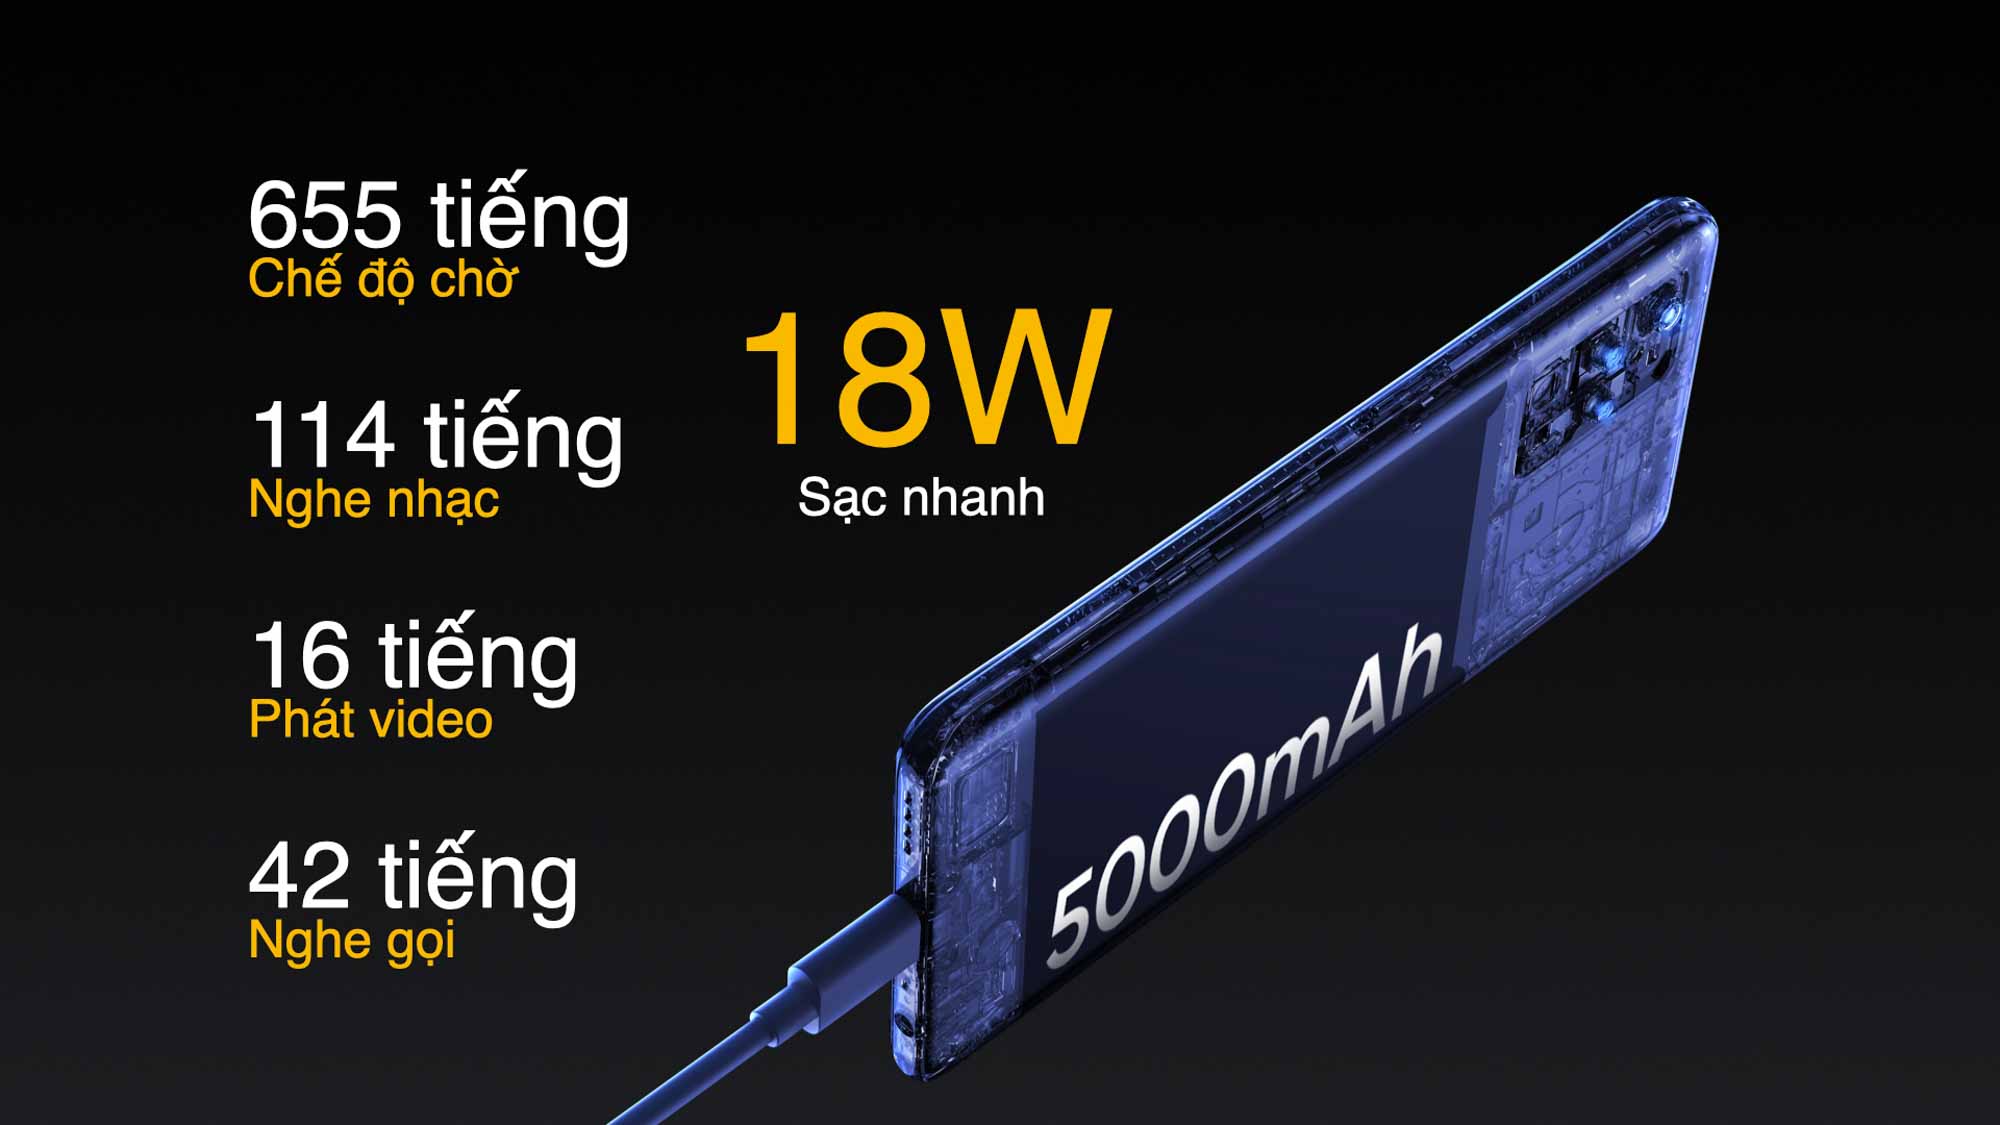 realme 8 5G chính thức ra mắt, mang vi xử lý 5G thế hệ mới với thiết kế sang trọng siêu mỏng nhẹ